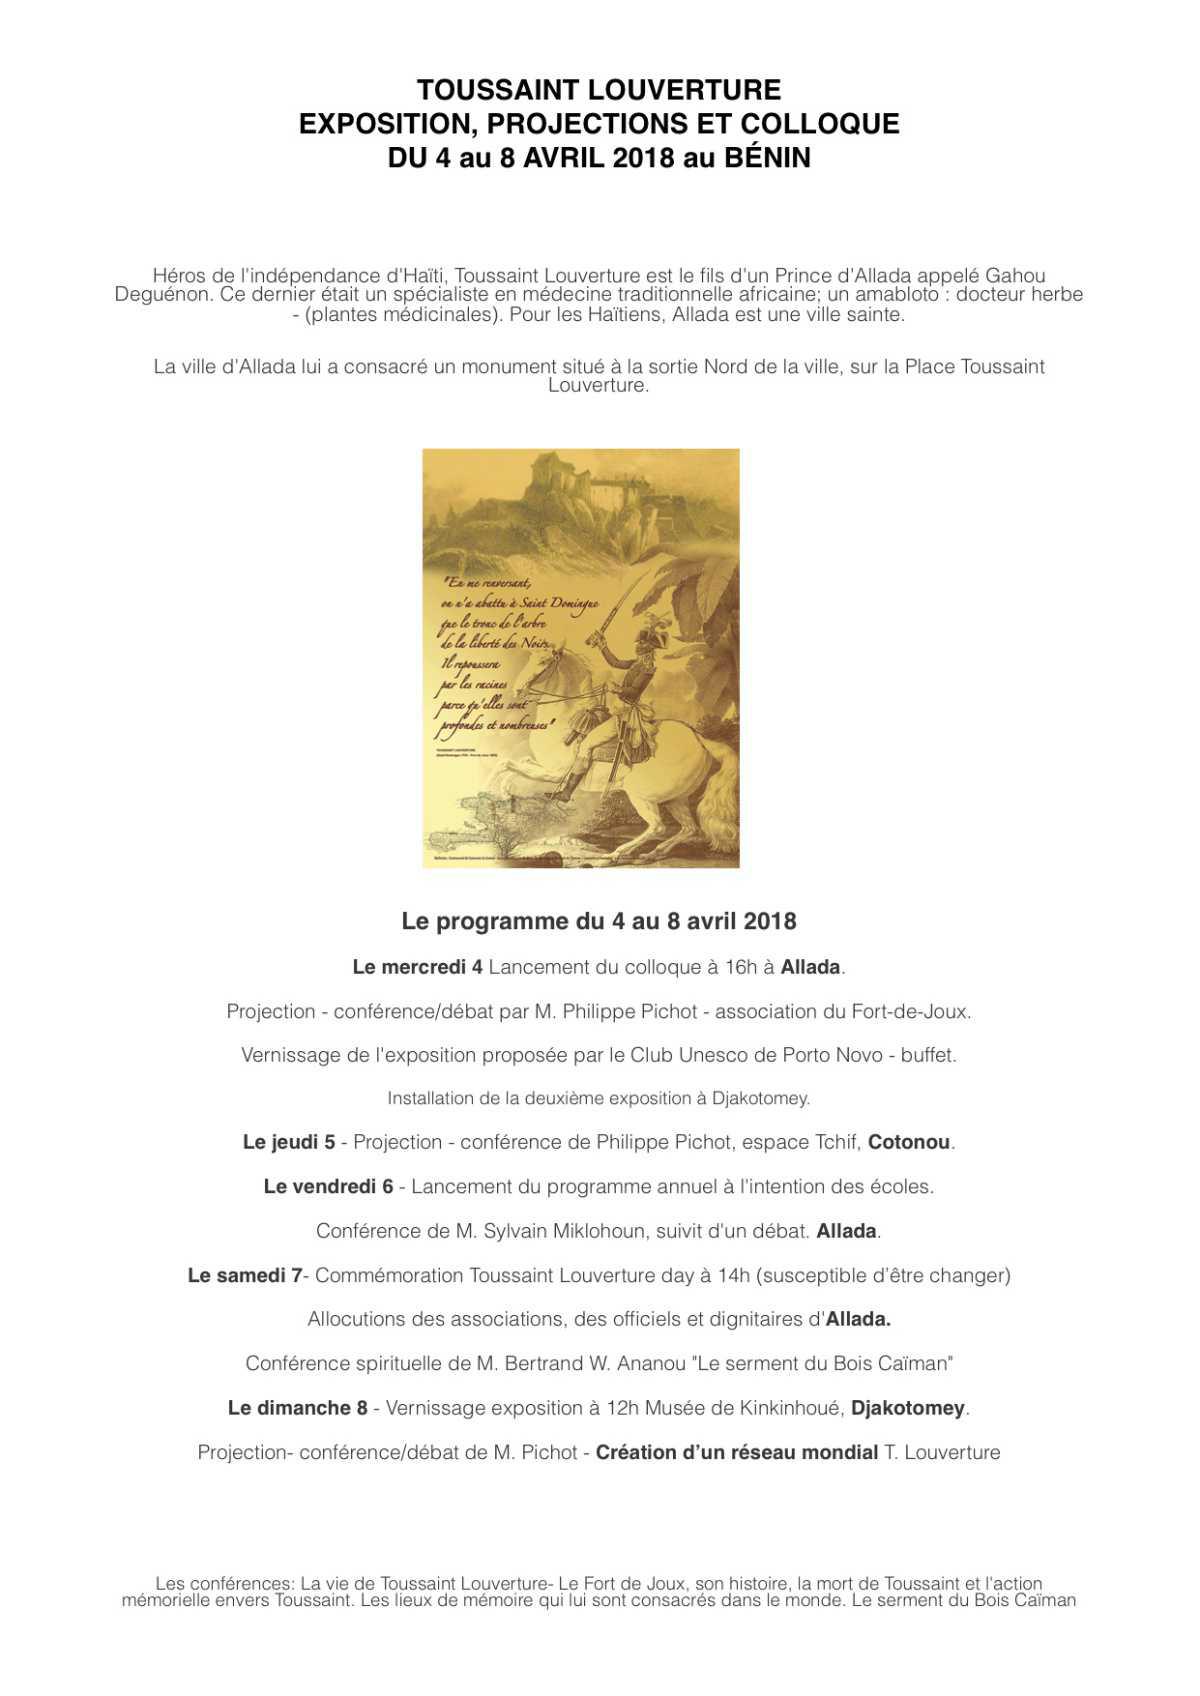 Toussaint Louverture Day à Allada le 7 avril 19